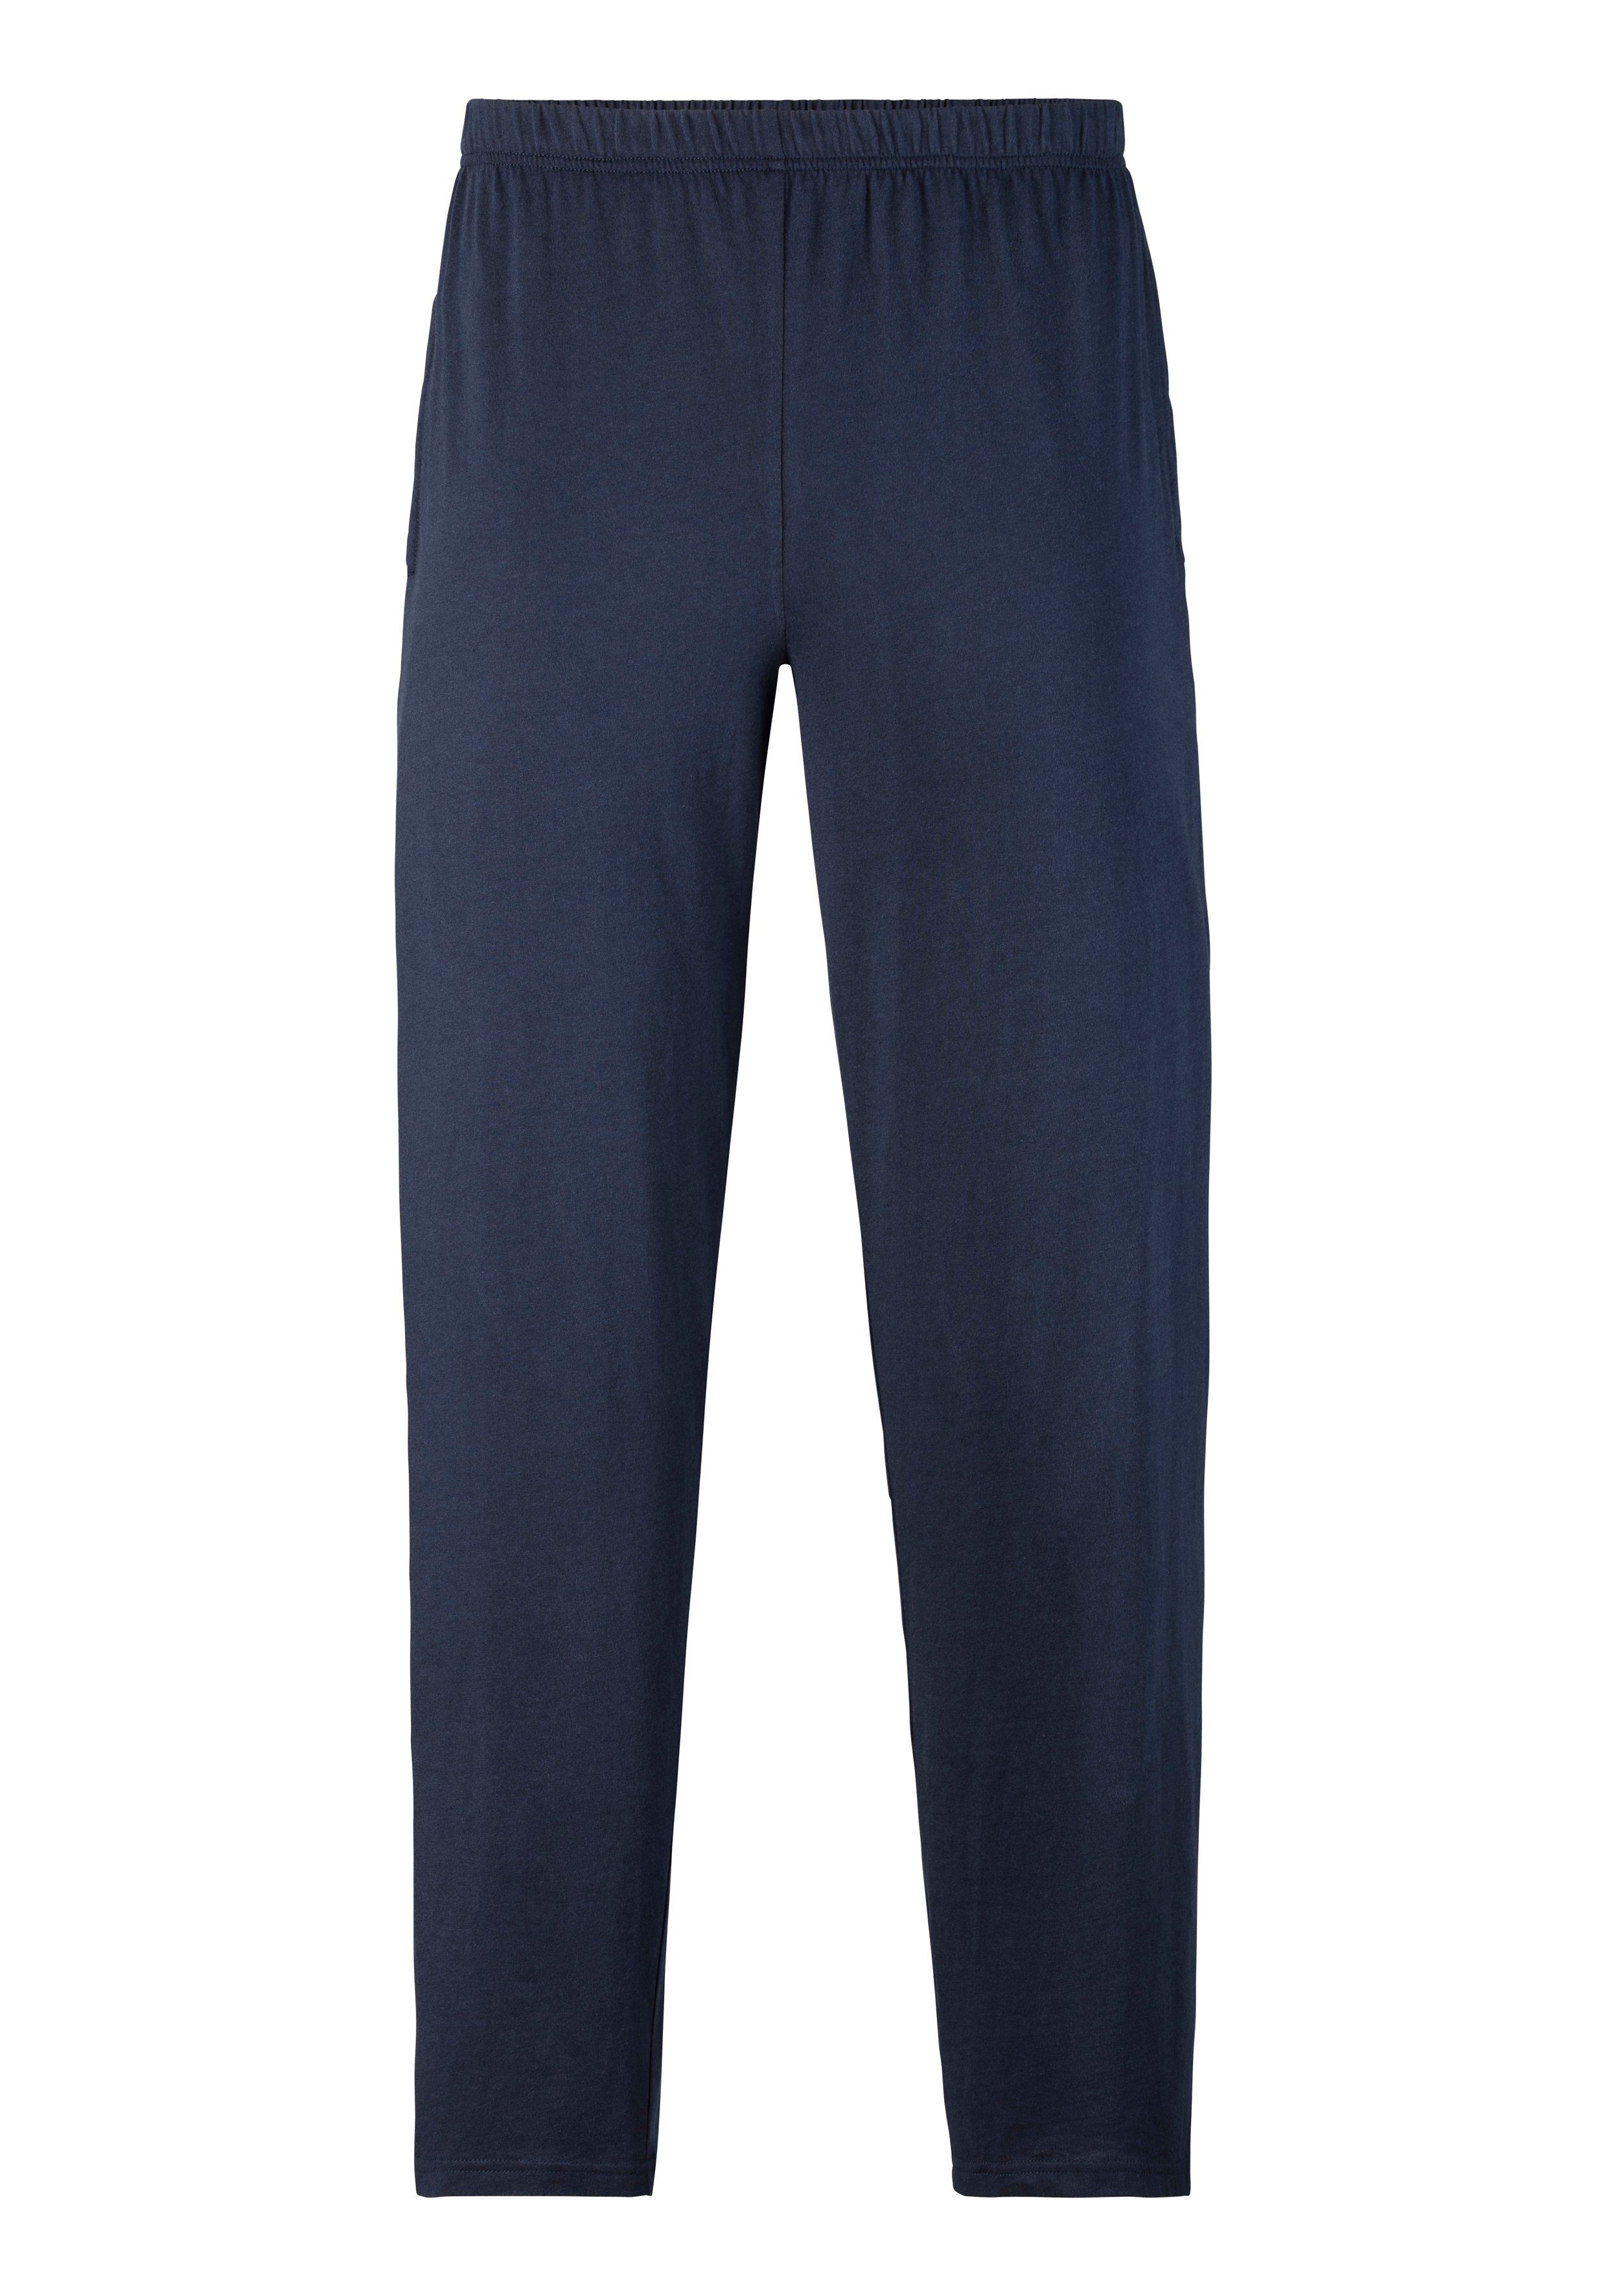 Wäsche/Bademode Nachtwäsche le jogger® Pyjama (2 Stück) gerngefärbter Streifen